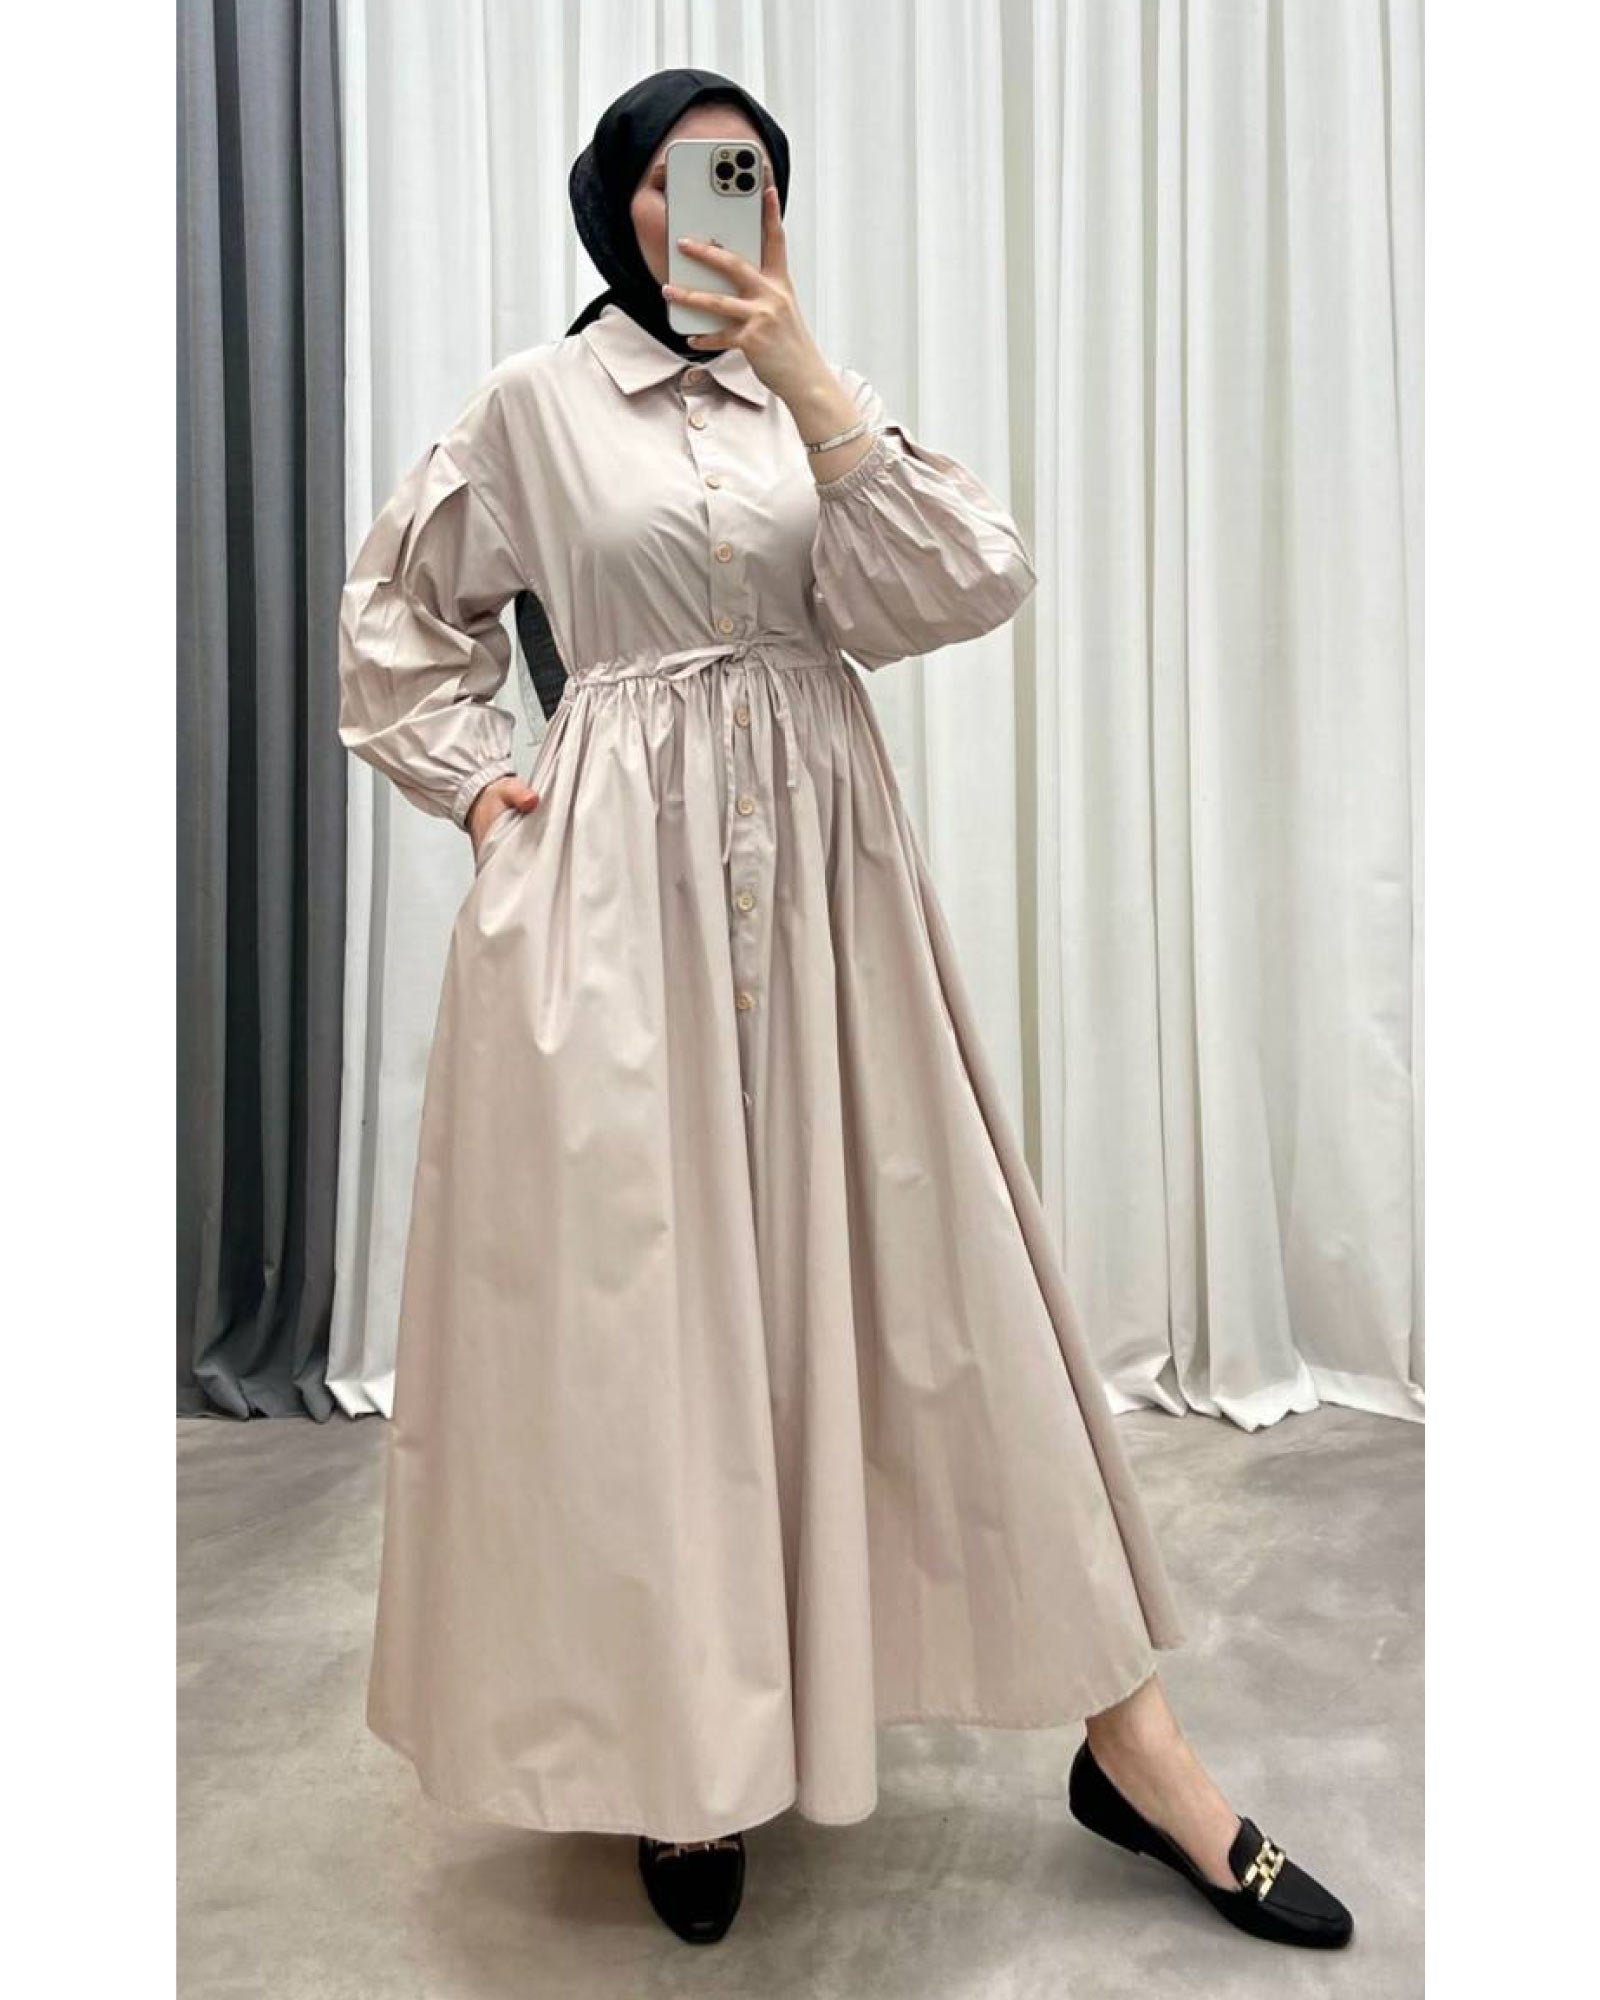 Damenkleidung Hijab- Sommerliches Kleid aus Hemd Stoff, mit Tunnelzug am Tailer